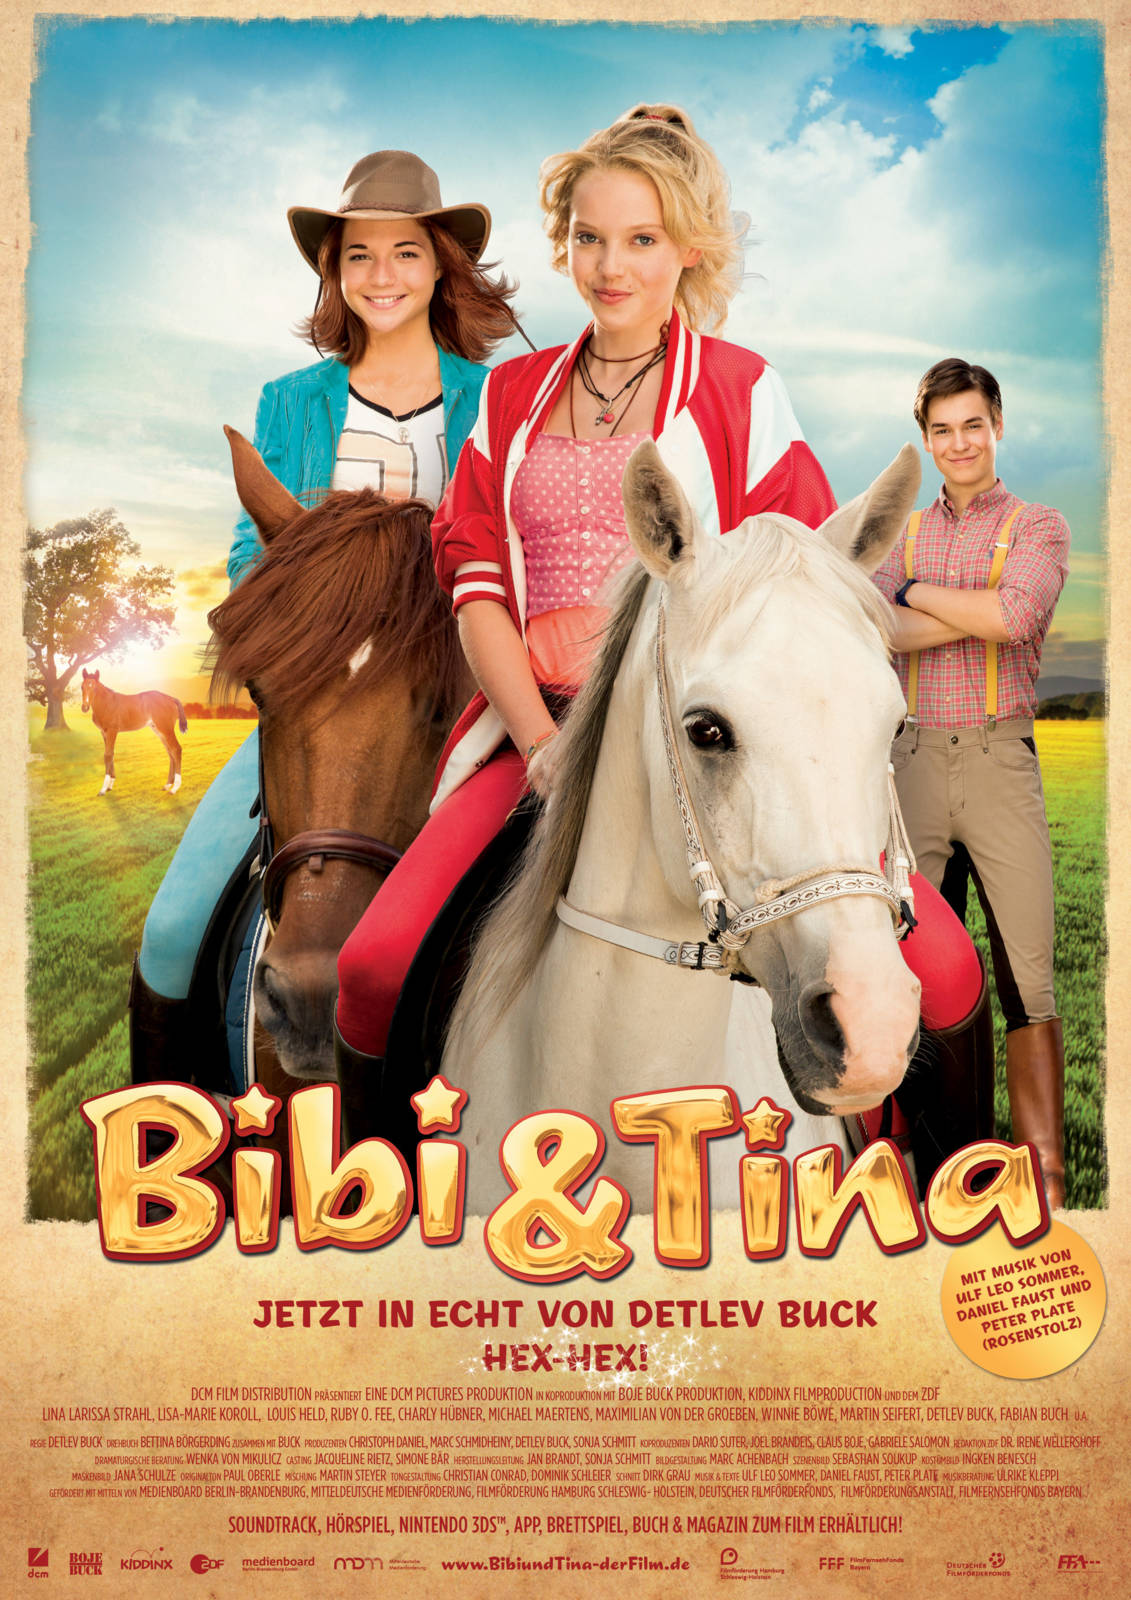 Bibi és Tina - A nagy verseny online